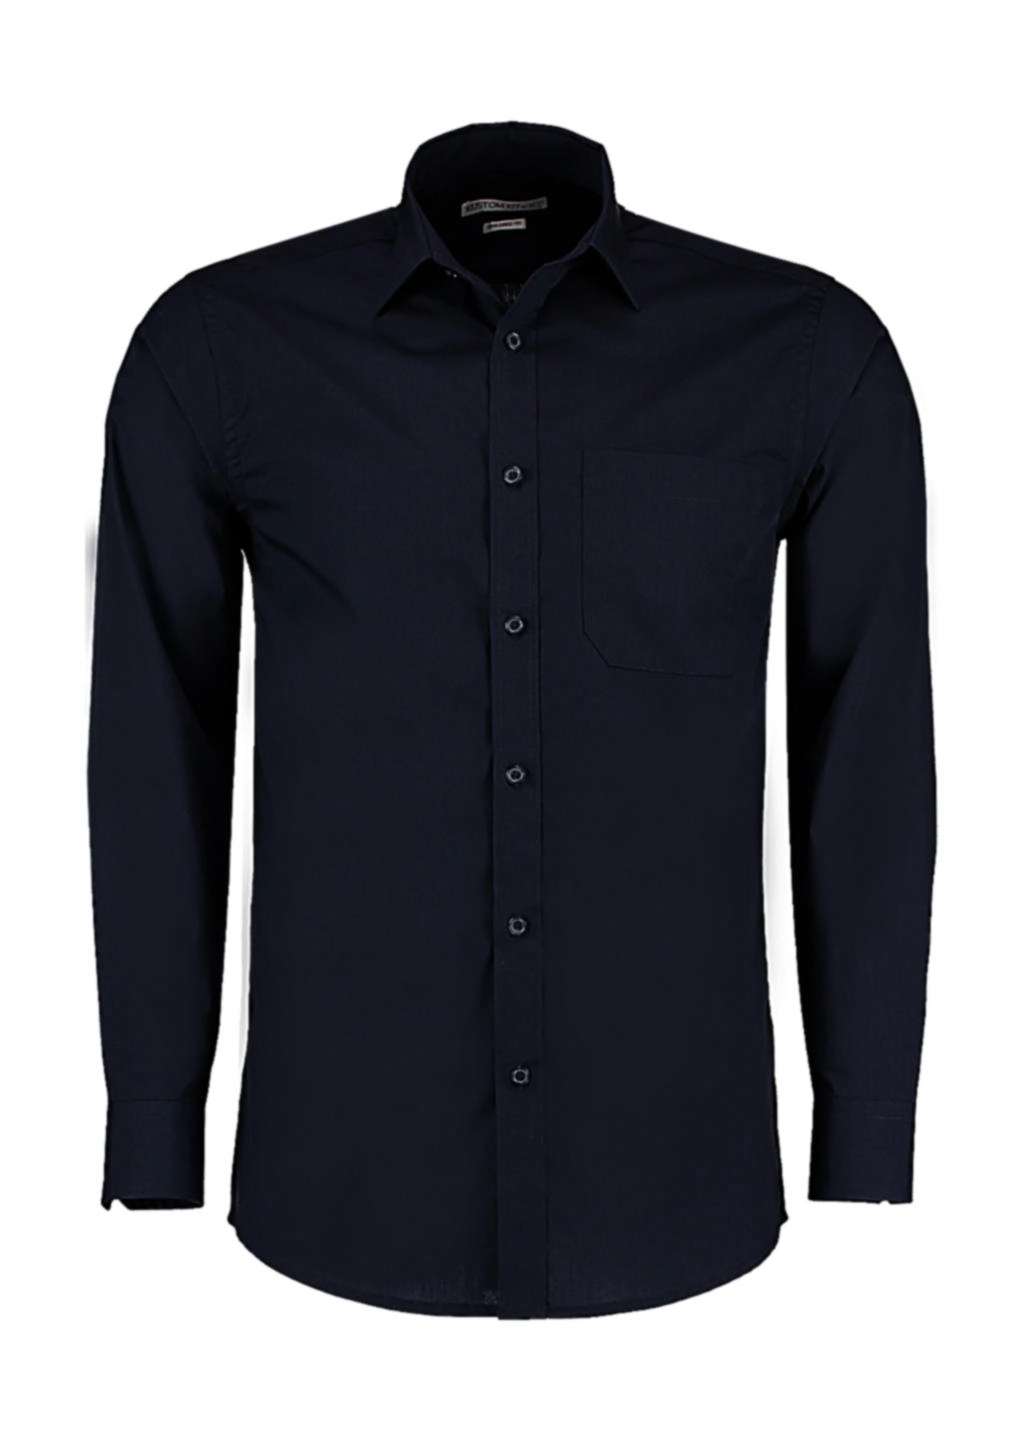 Tailored Fit Poplin Shirt zum Besticken und Bedrucken in der Farbe Dark Navy mit Ihren Logo, Schriftzug oder Motiv.